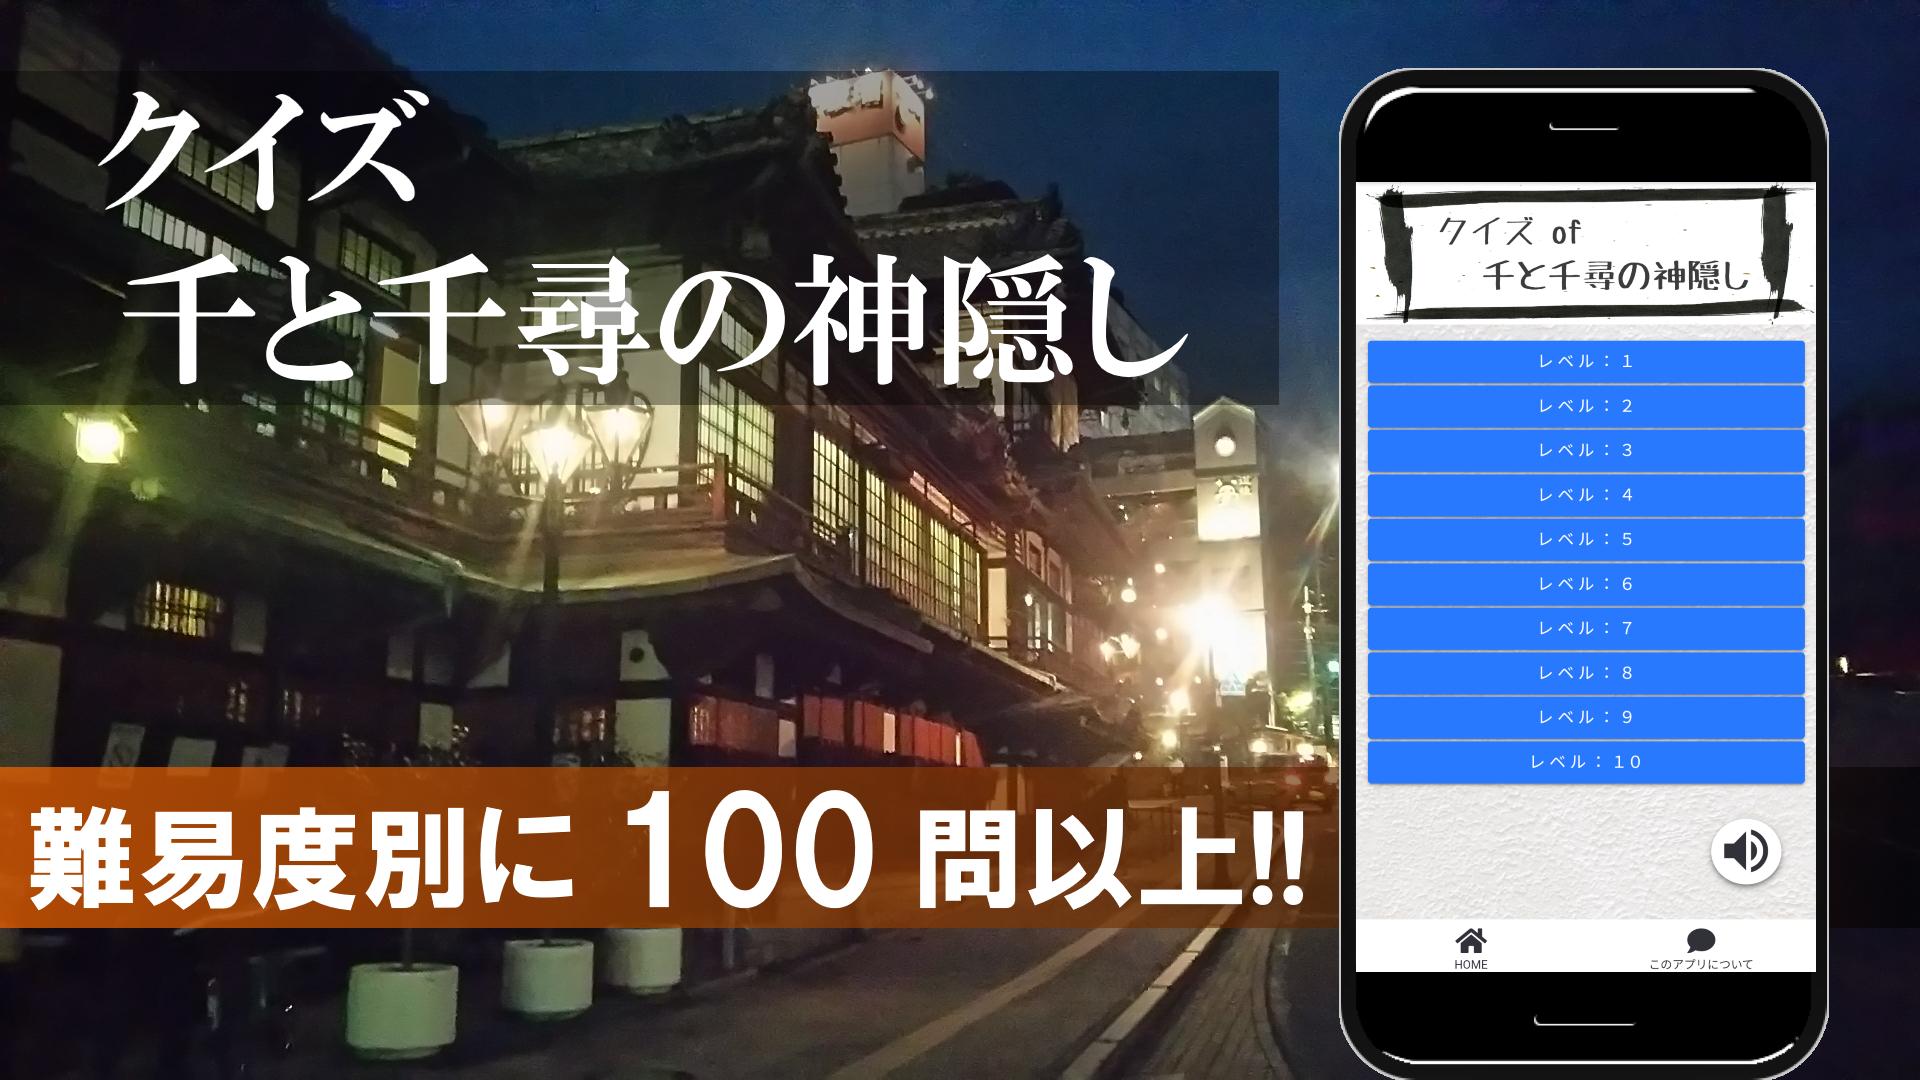 クイズ Of 千と千尋の神隠し For Android Apk Download